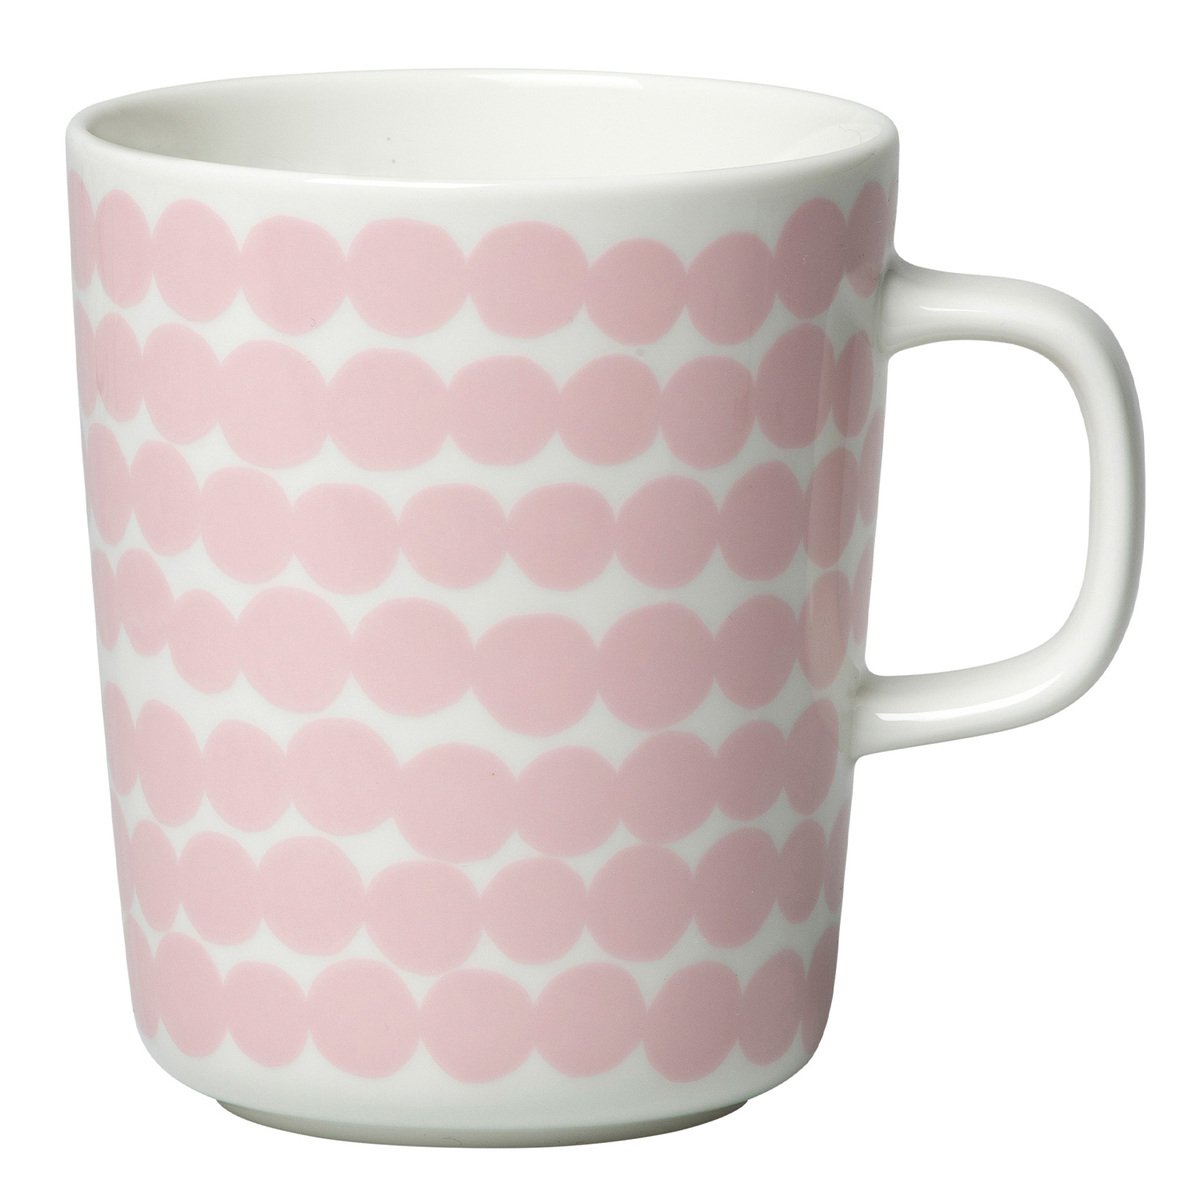 Marimekko Oiva - Siirtolapuutarha Räsymatto mug 2,5 dl, white-pink |  Pre-used design | Franckly